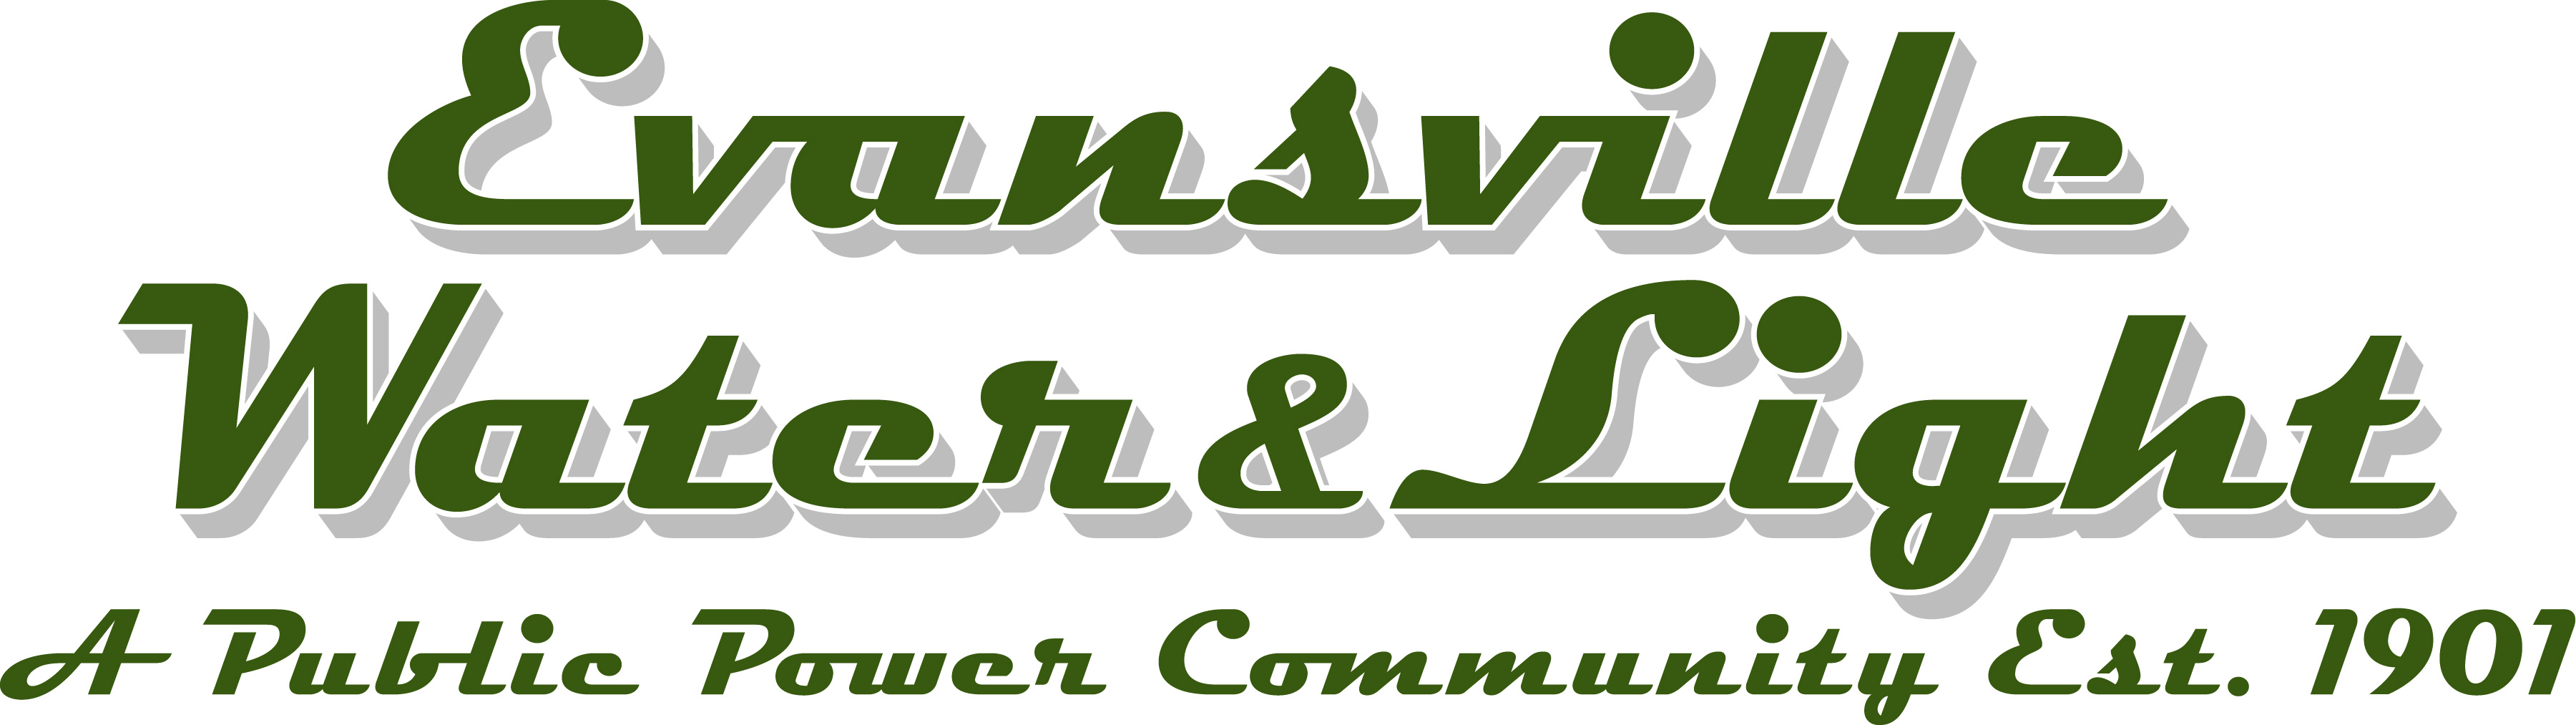 Evansville logo